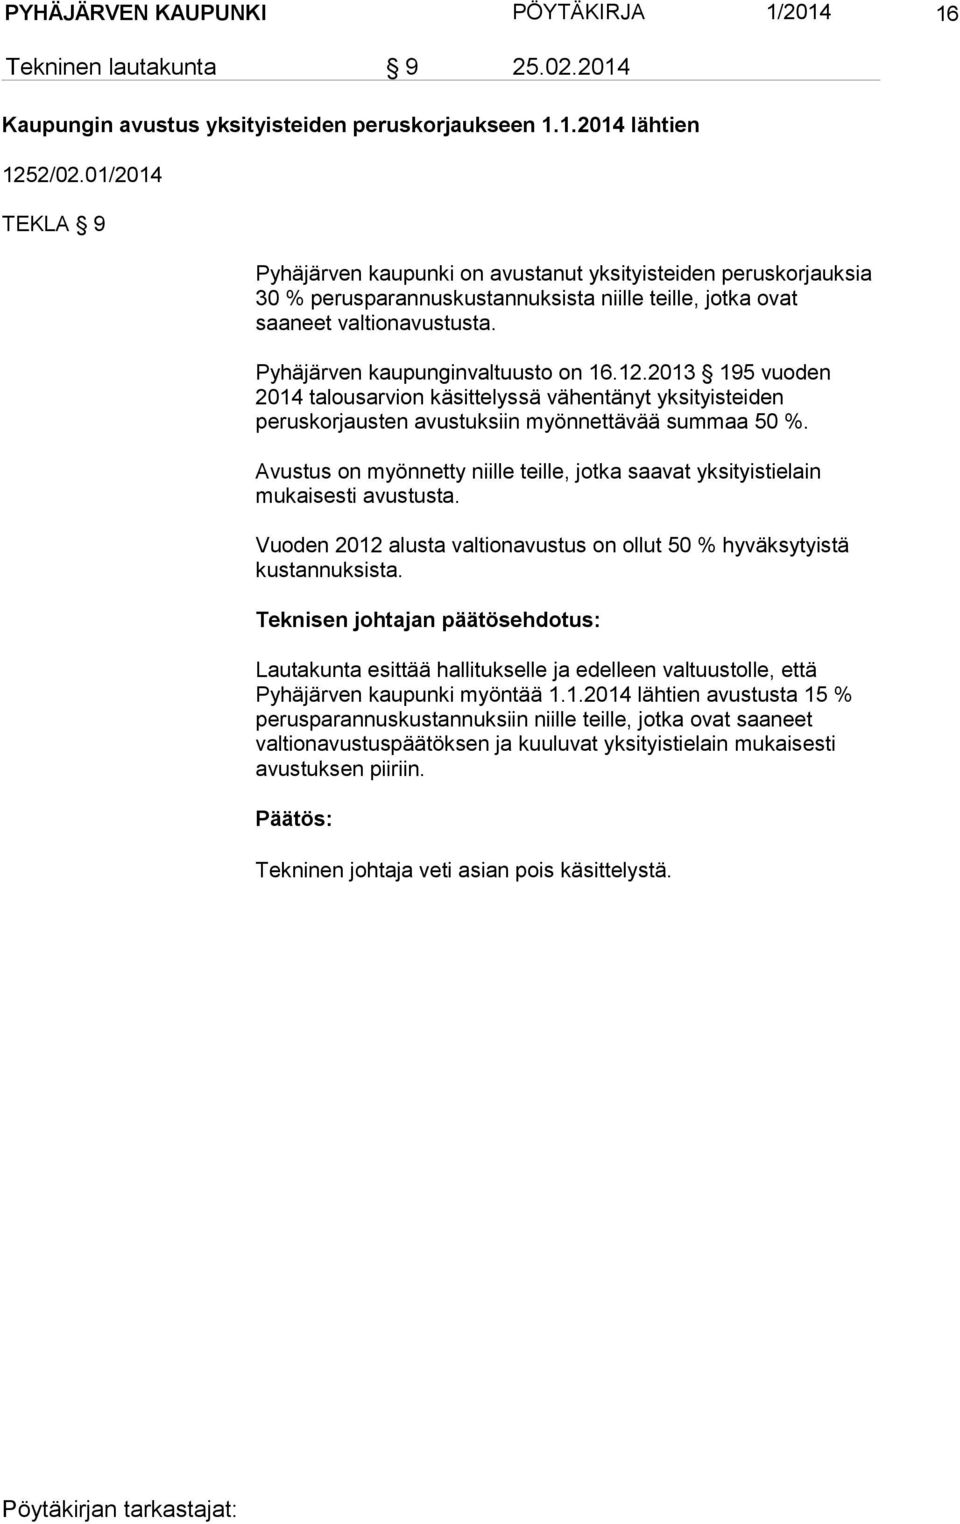 Pyhäjärven kaupunginvaltuusto on 16.12.2013 195 vuoden 2014 talousarvion käsittelyssä vähentänyt yksityisteiden peruskorjausten avustuksiin myönnettävää summaa 50 %.